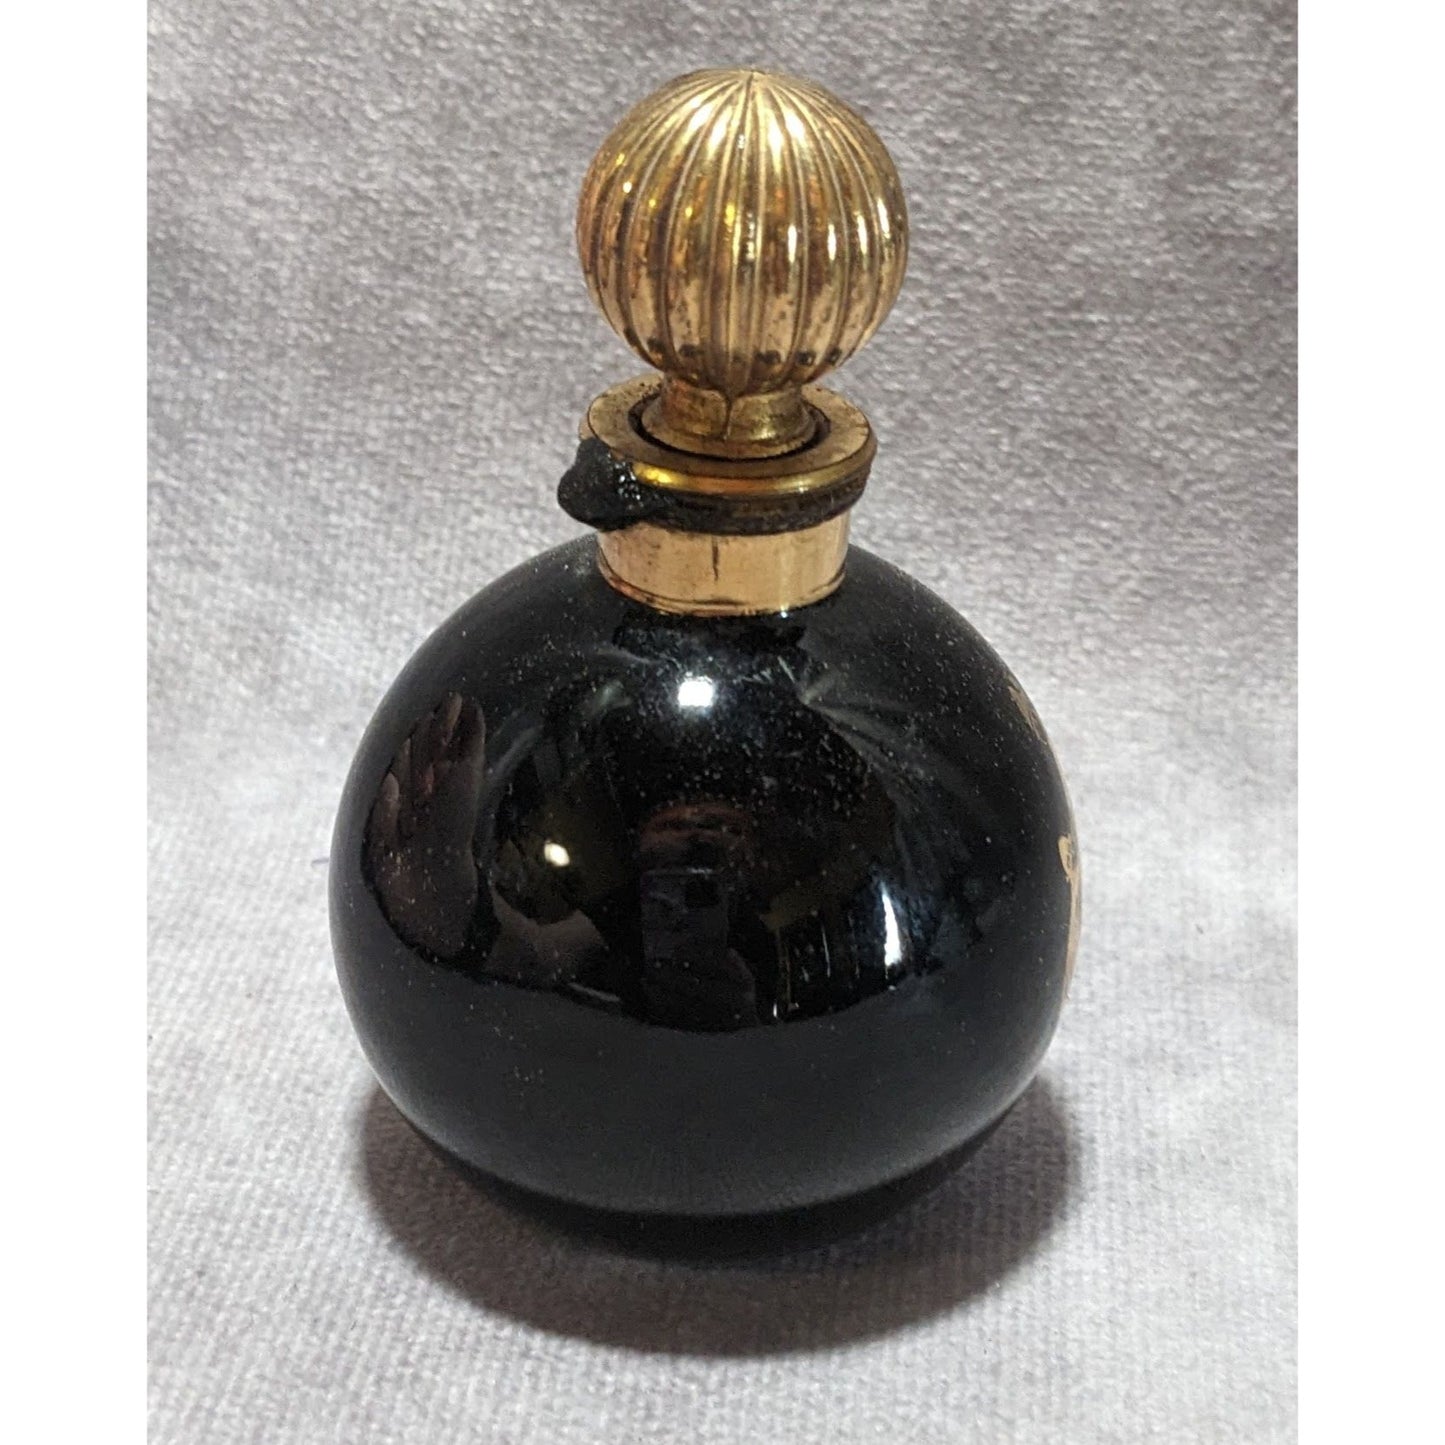 Lanvin Arpege Perfume Bottle (Empty)